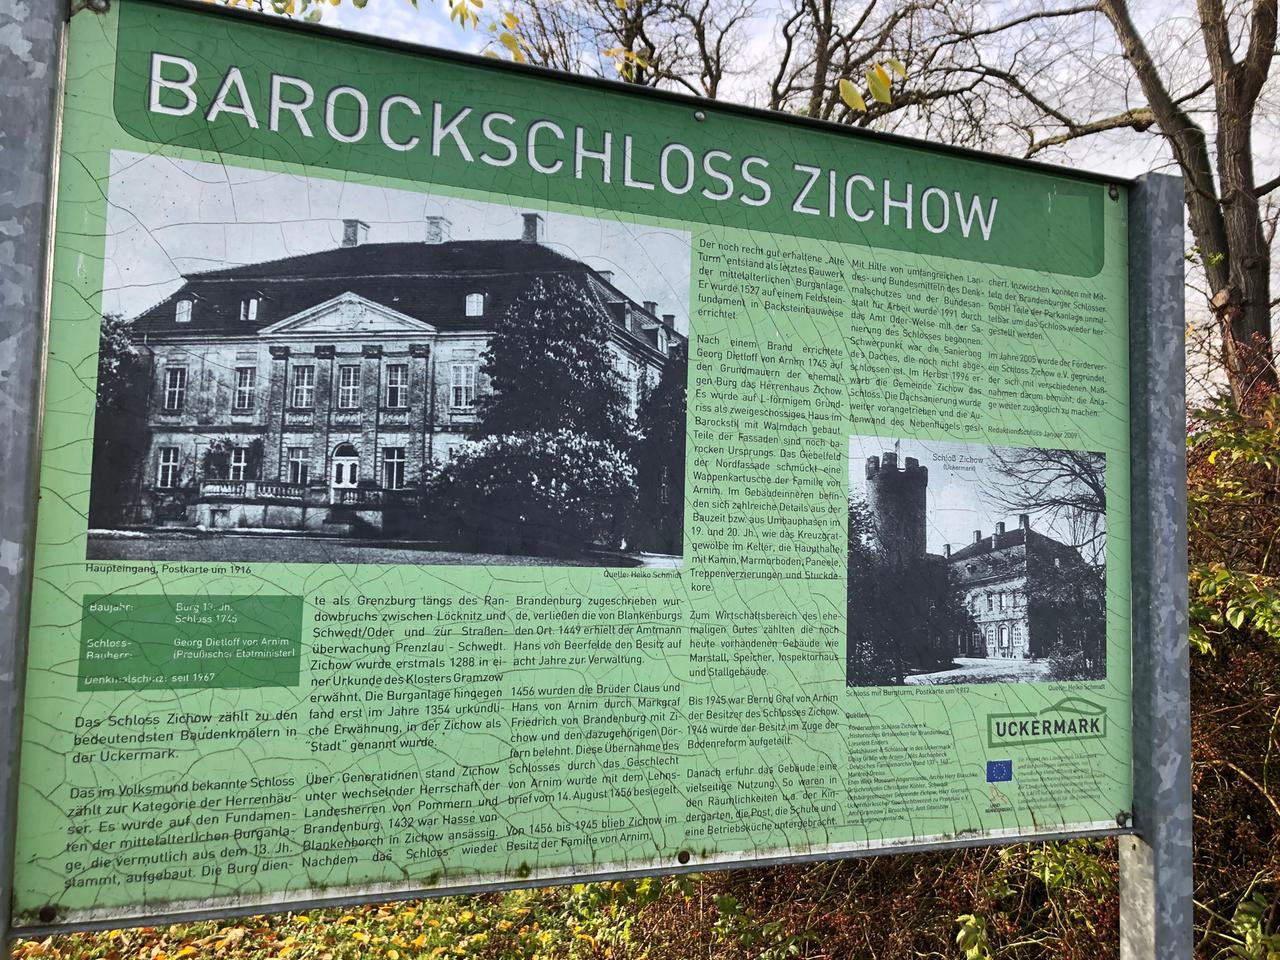 Die Infotafel zum Barockschloss Zichow gibt einen Überblick über die Geschichte des Gebäudes, jedoch keinen Hinweis auf das Außenlager des KZ Ravensbrück.